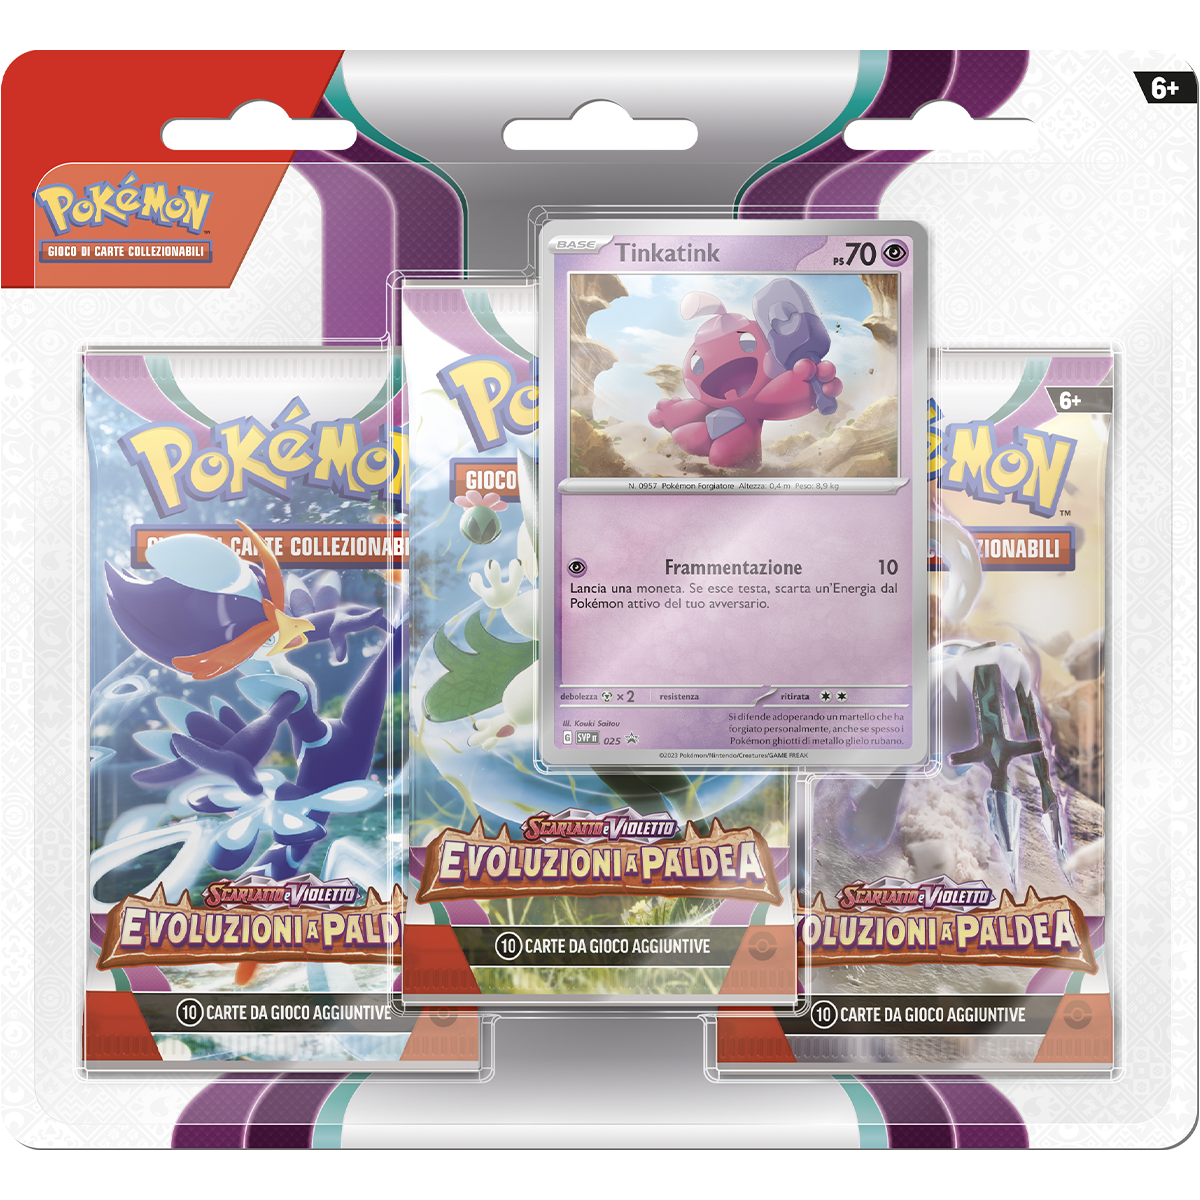 Pokemon scarlatto e violetto evoluzioni a paldea - 3 pack blister - POKEMON